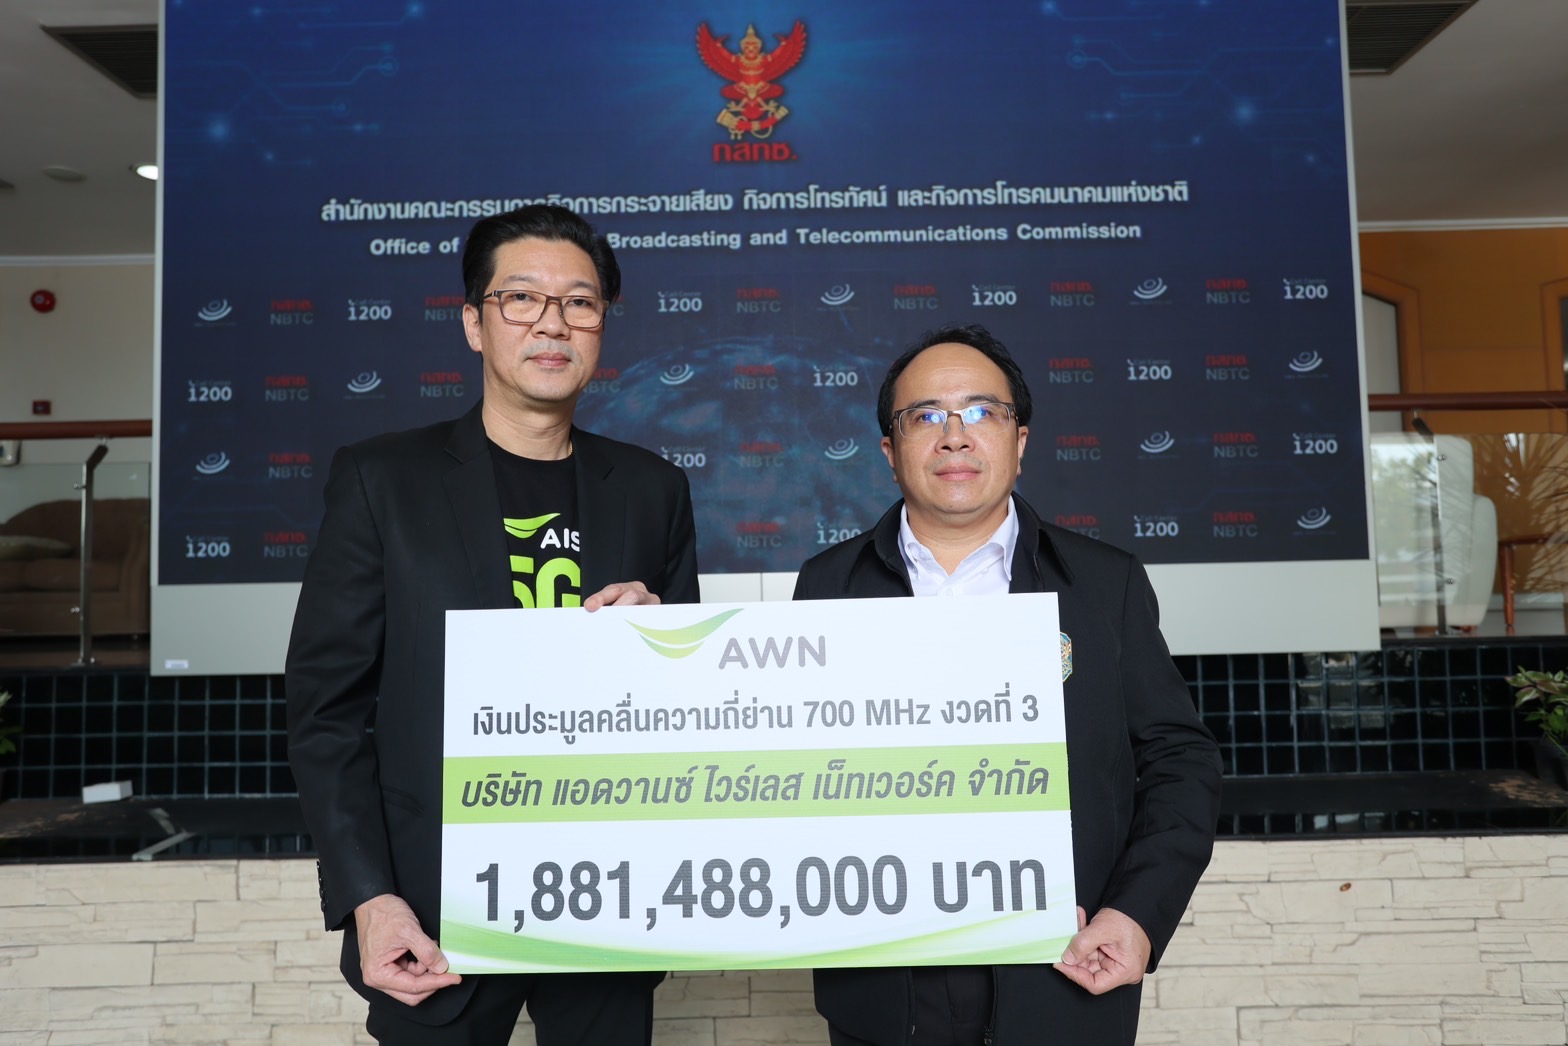 AIS ชำระค่าใบอนุญาตคลื่นความถี่ 700 MHz ผู้ให้บริการ 5G ที่มีแบนวิธกว้างสุด และถือครองคลื่นความถี่มากสุดในไทย